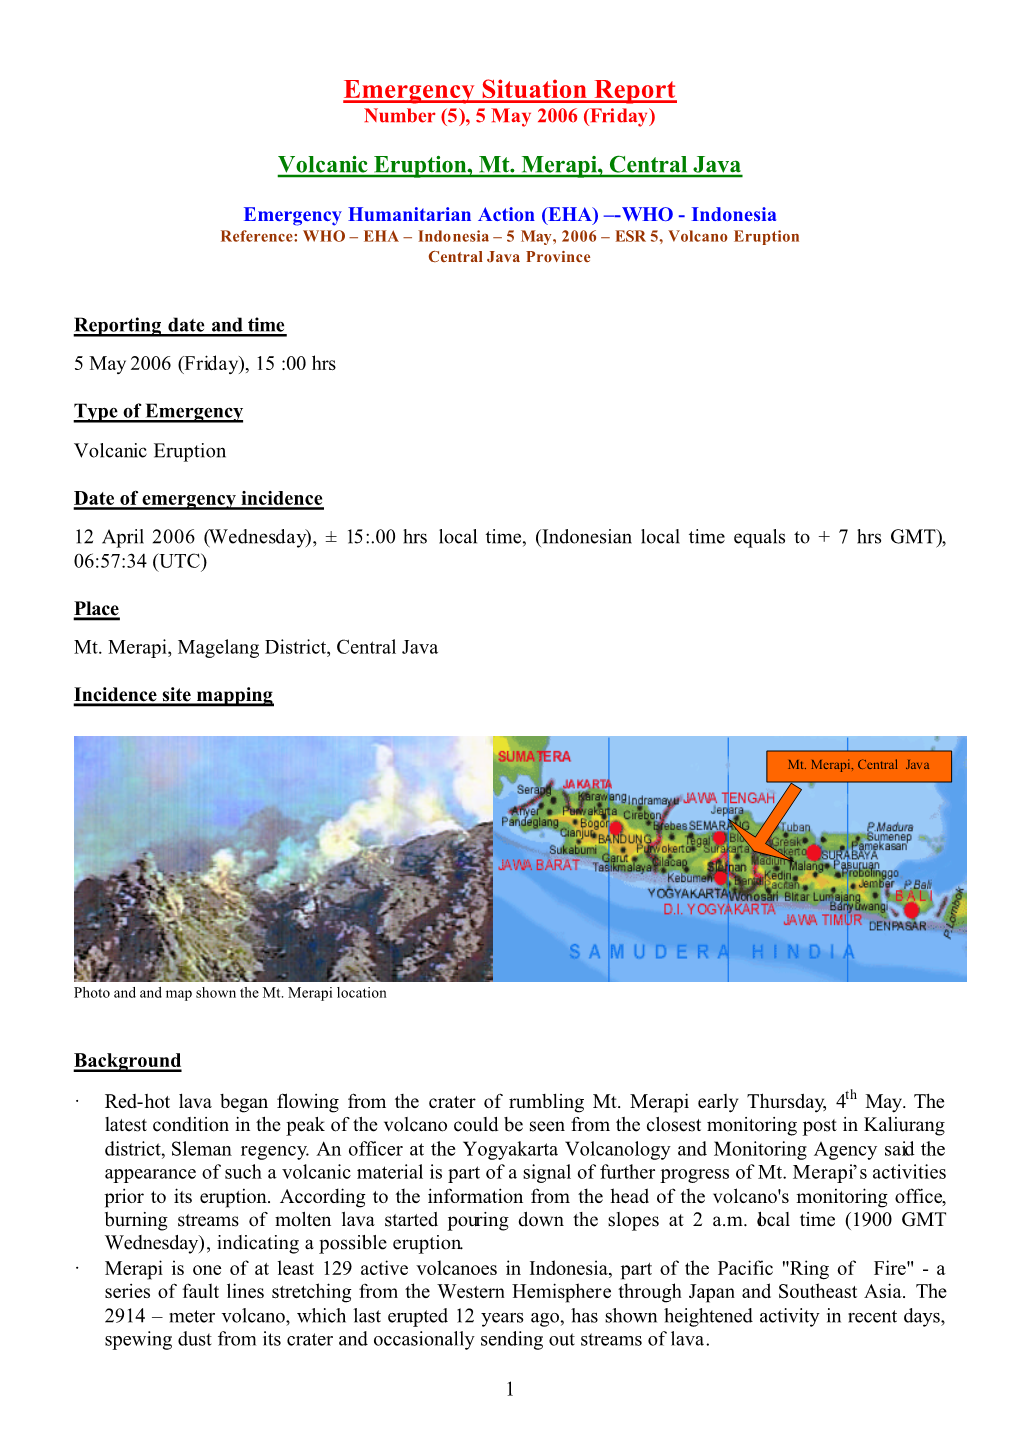 Mt. Merapi Volcanic Eruption Central Java 5 050506